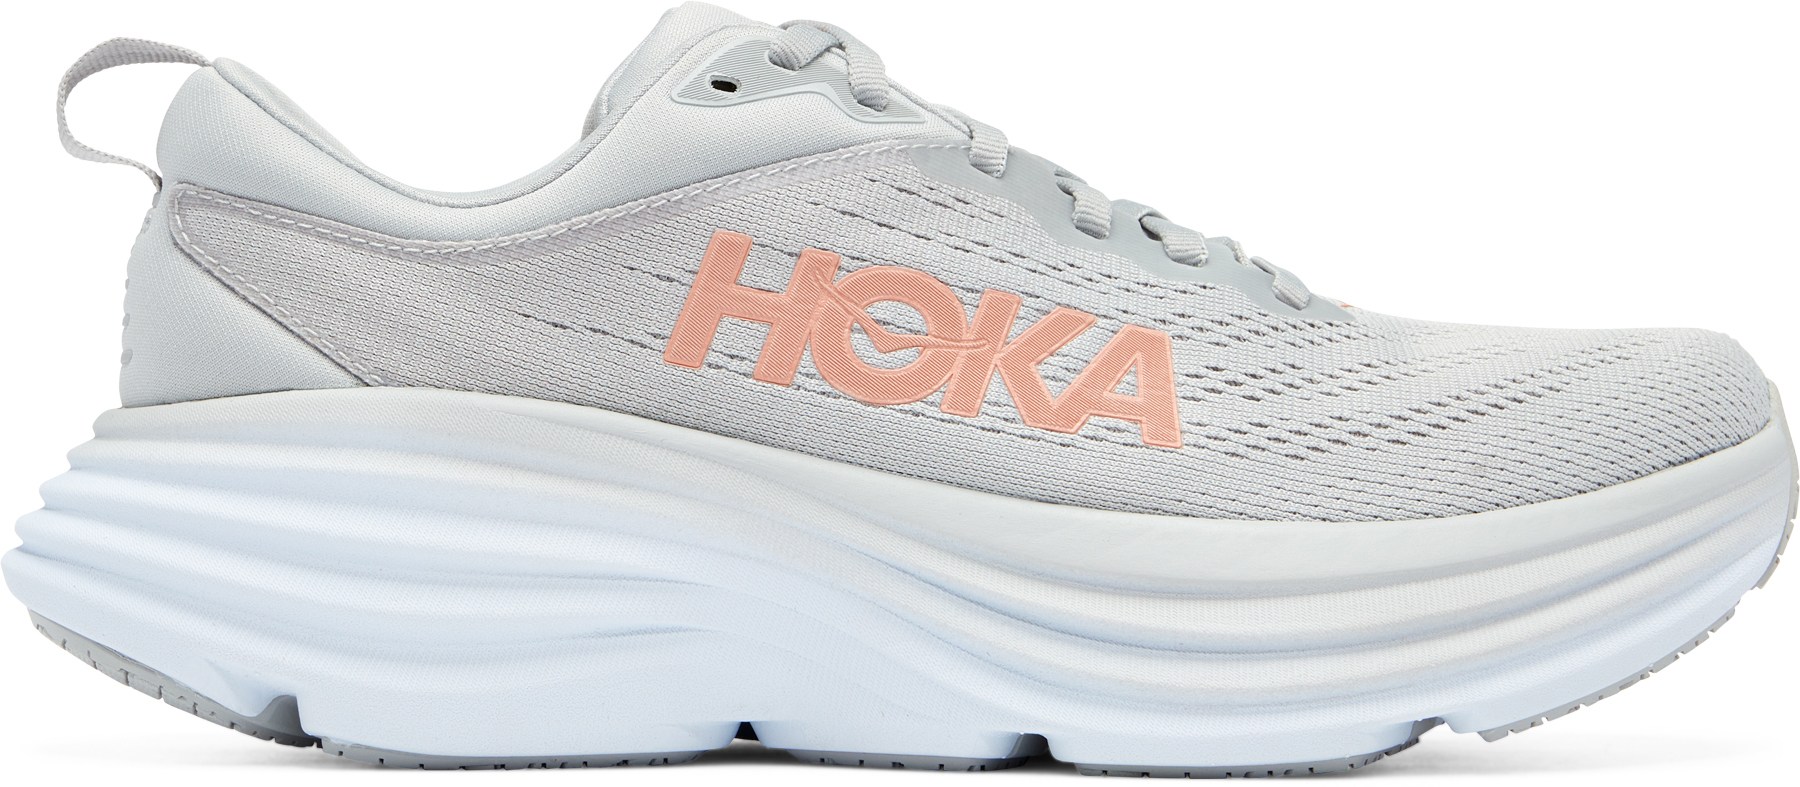 Кроссовки для шоссейного бега Bondi 8 — женские HOKA, серый